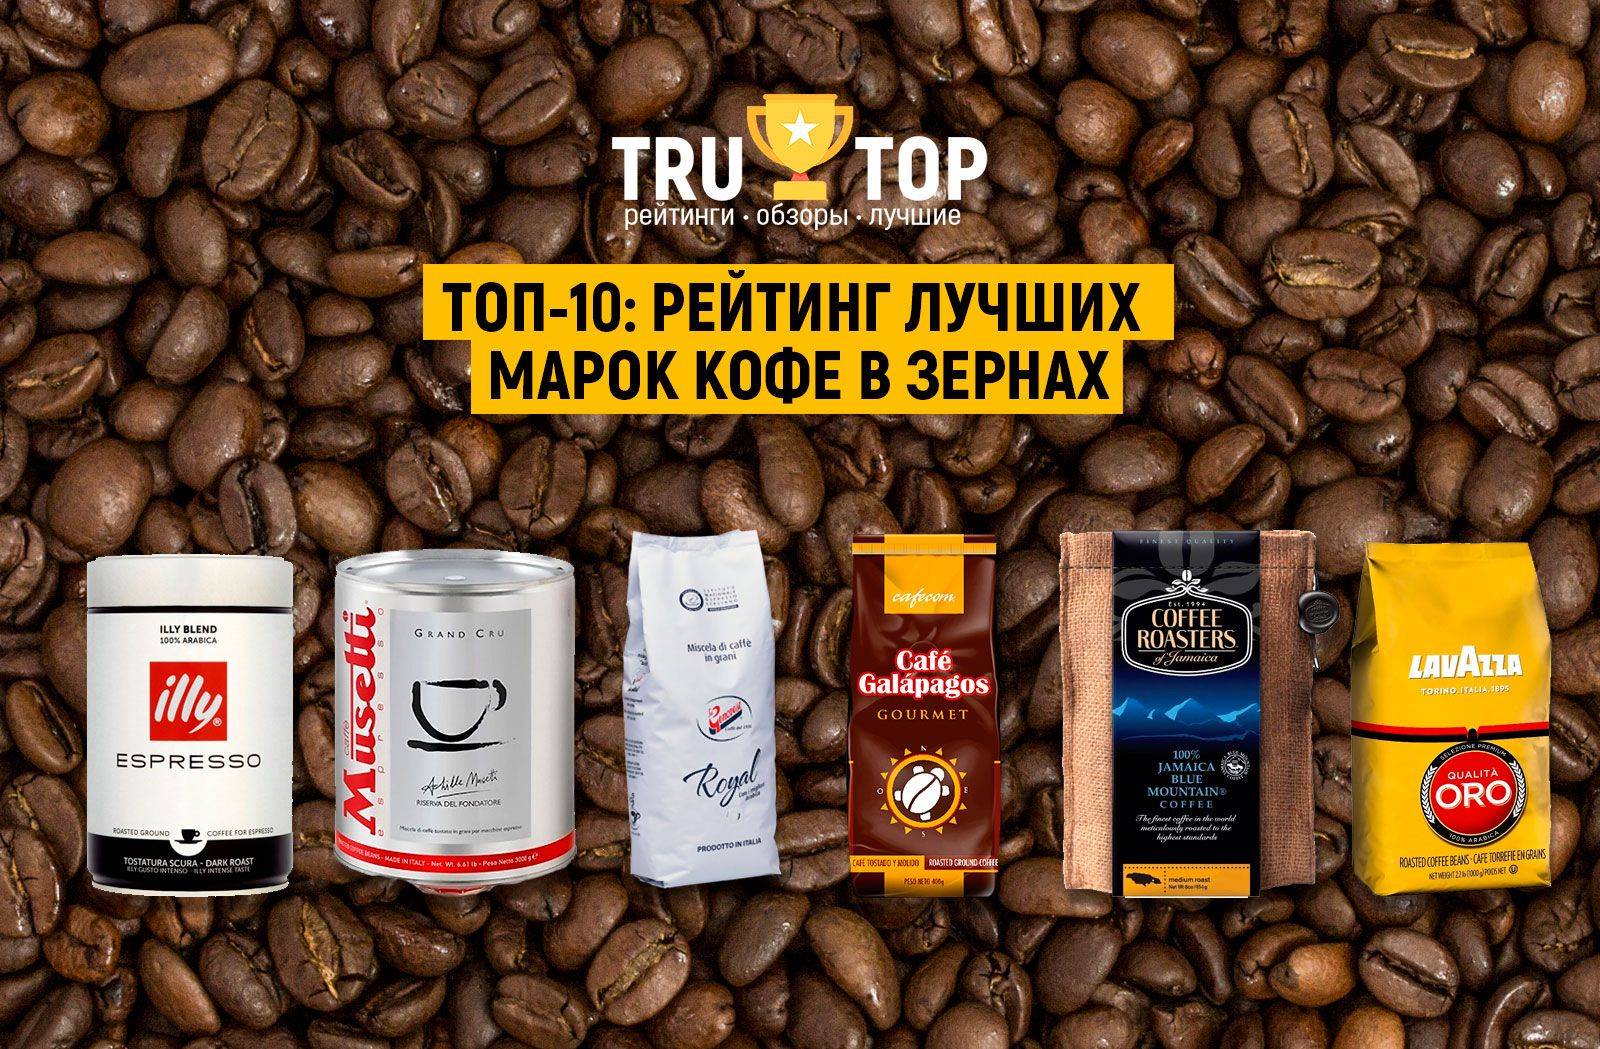 Топ-7 лучших марок кофе: обзор, отзывы